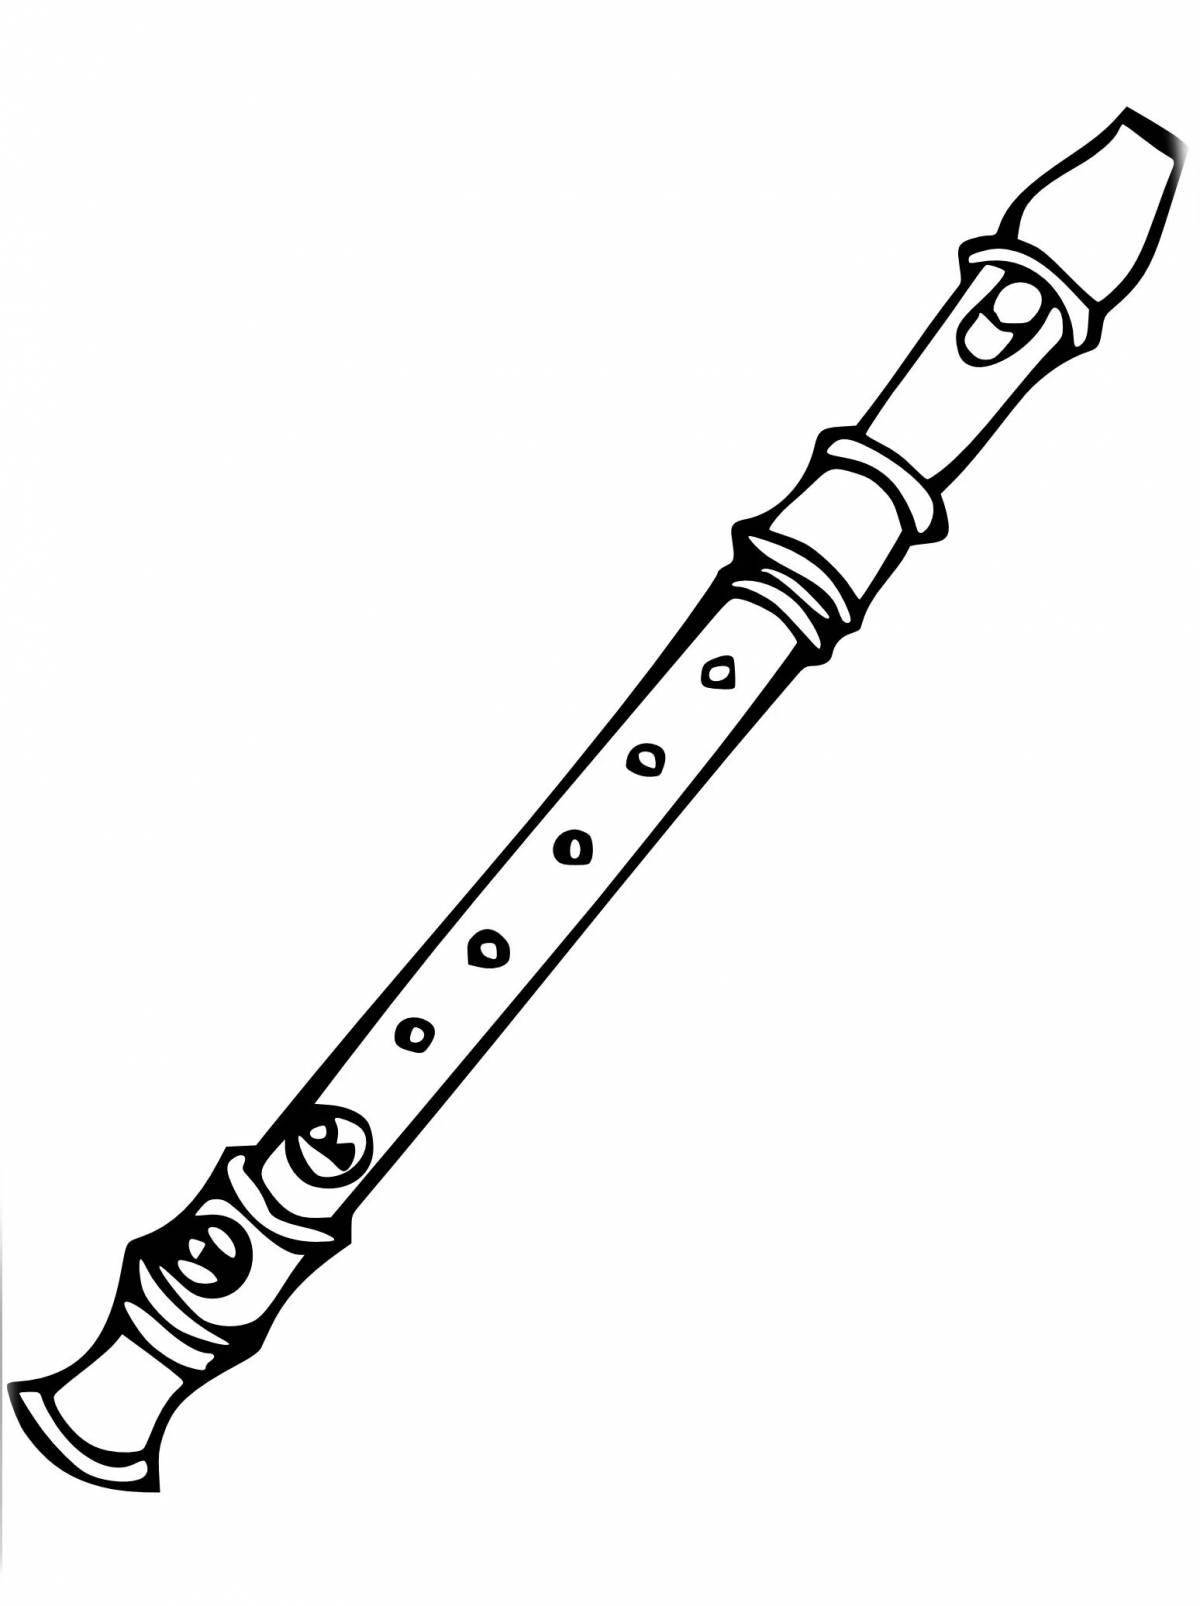 Великолепная раскраска музыкальный инструмент флейта